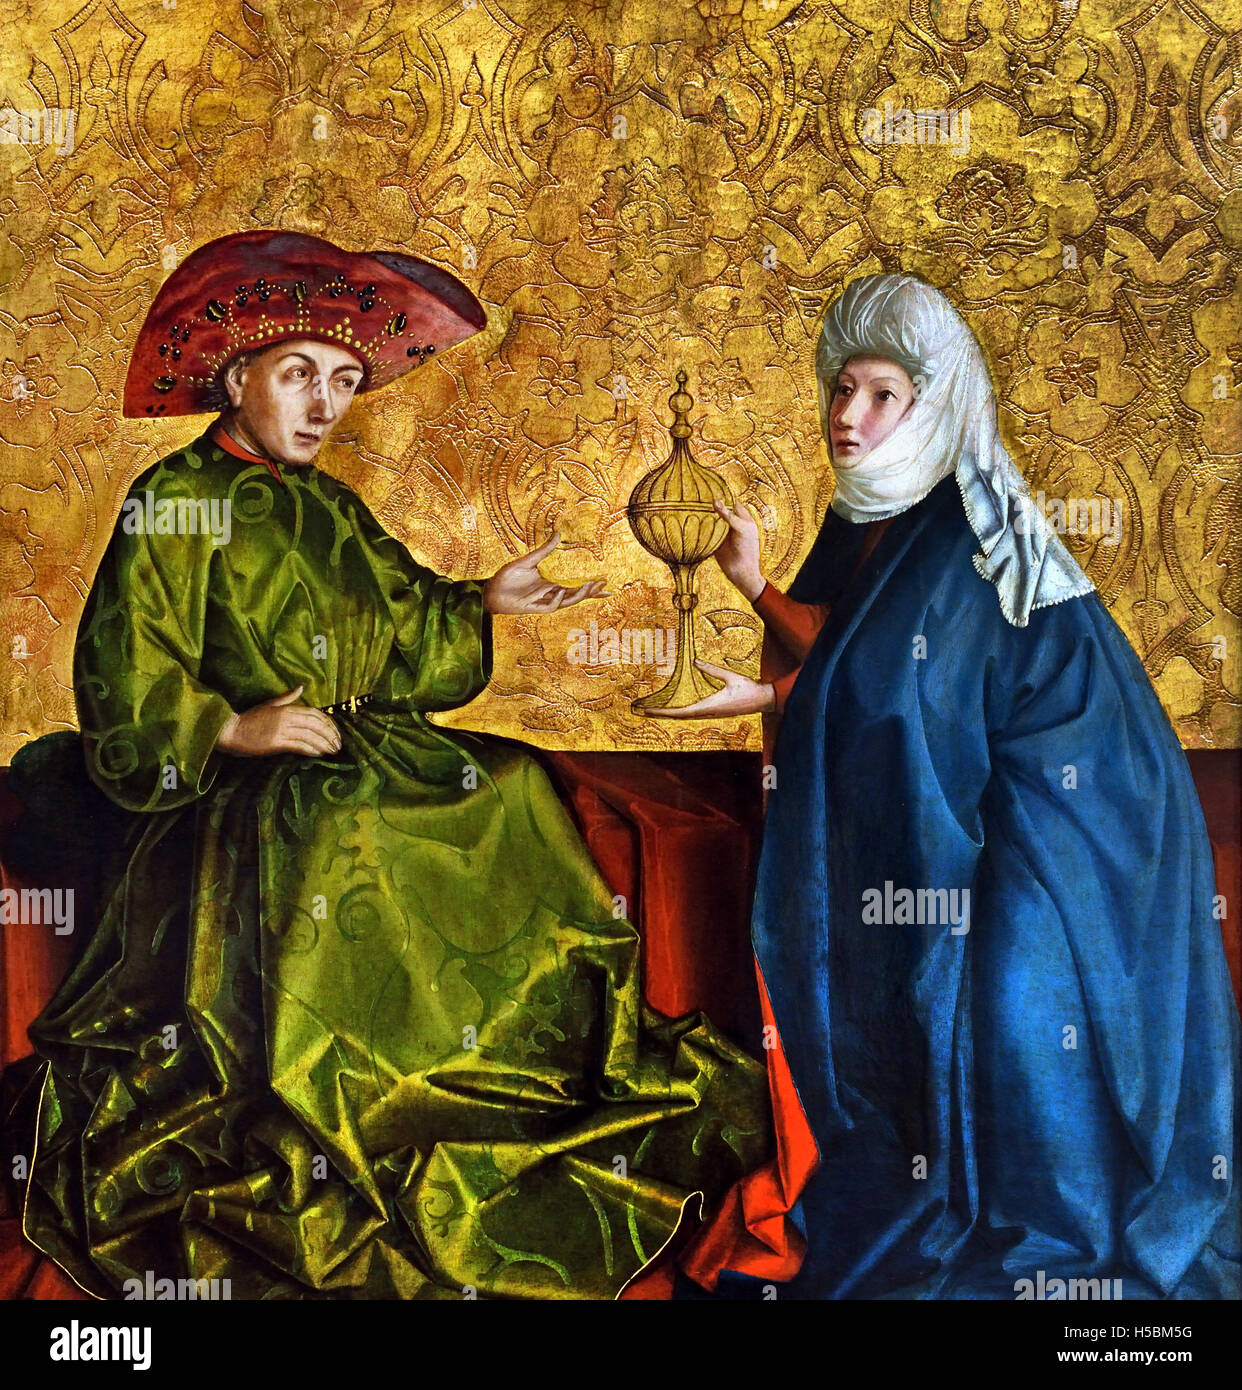 La reine de Saba avant Salomon 1435 Konrad Witz 1400-1446 Allemagne. La Reine de Sheba, Bible hébraïque. Elle apporte une caravane de cadeaux précieux pour le roi d'Israël Salomon. Banque D'Images